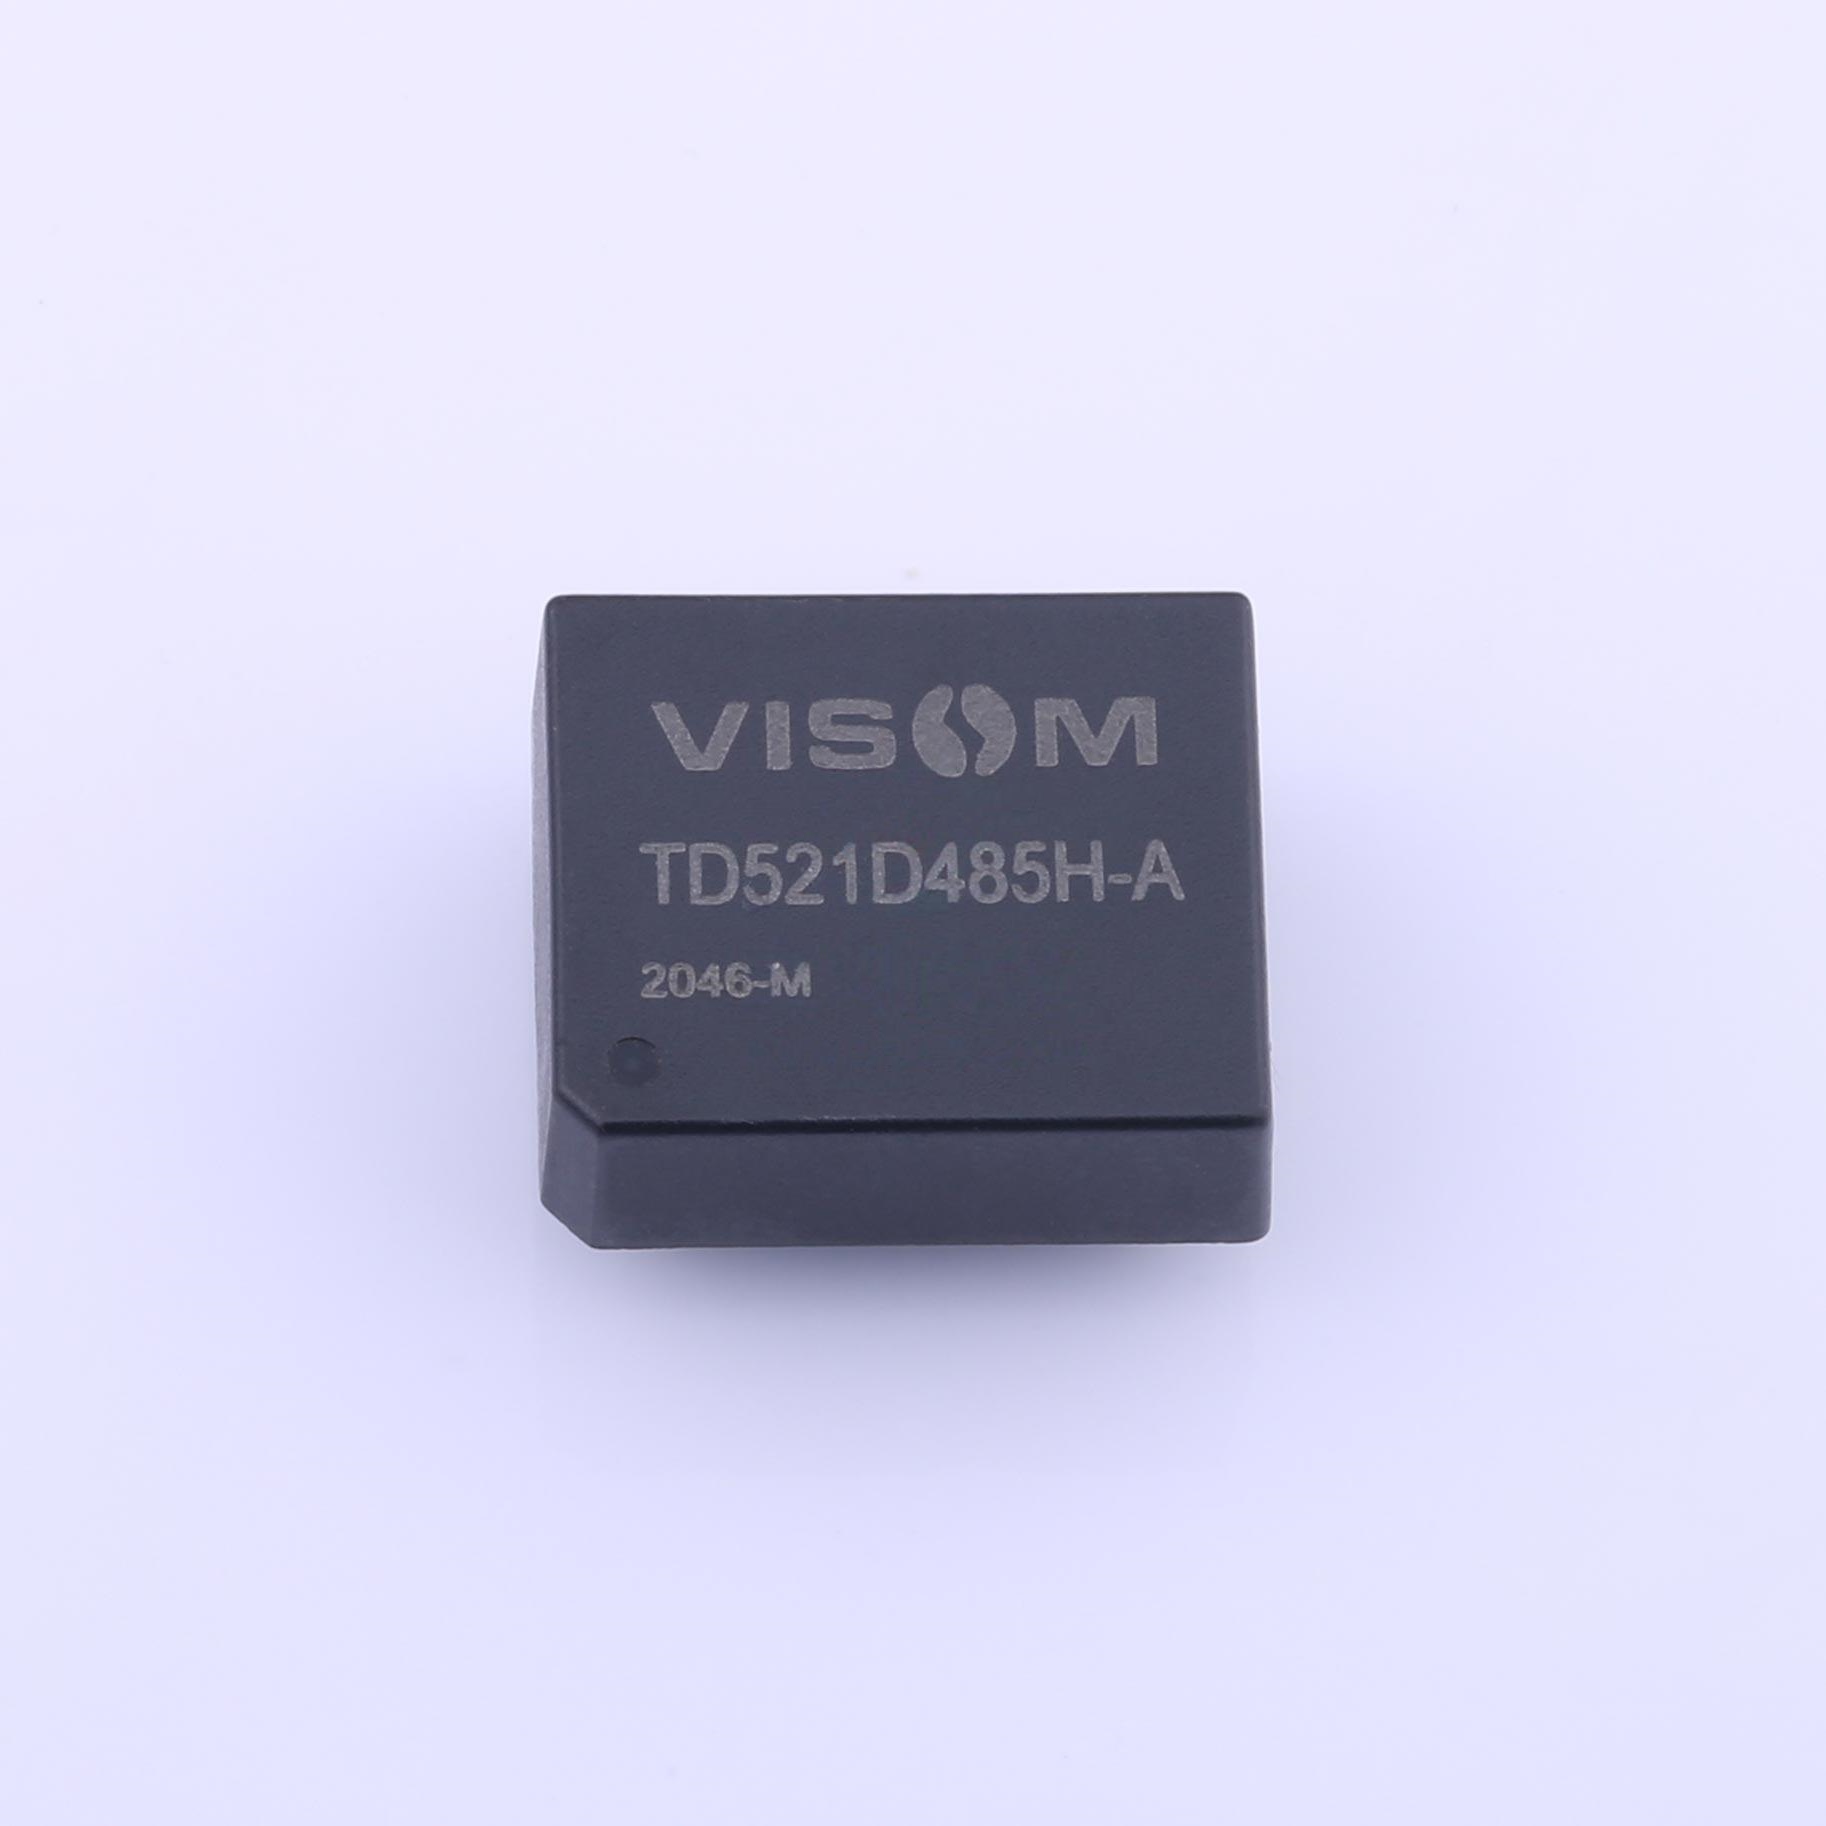 VISOM TD521D485H-A